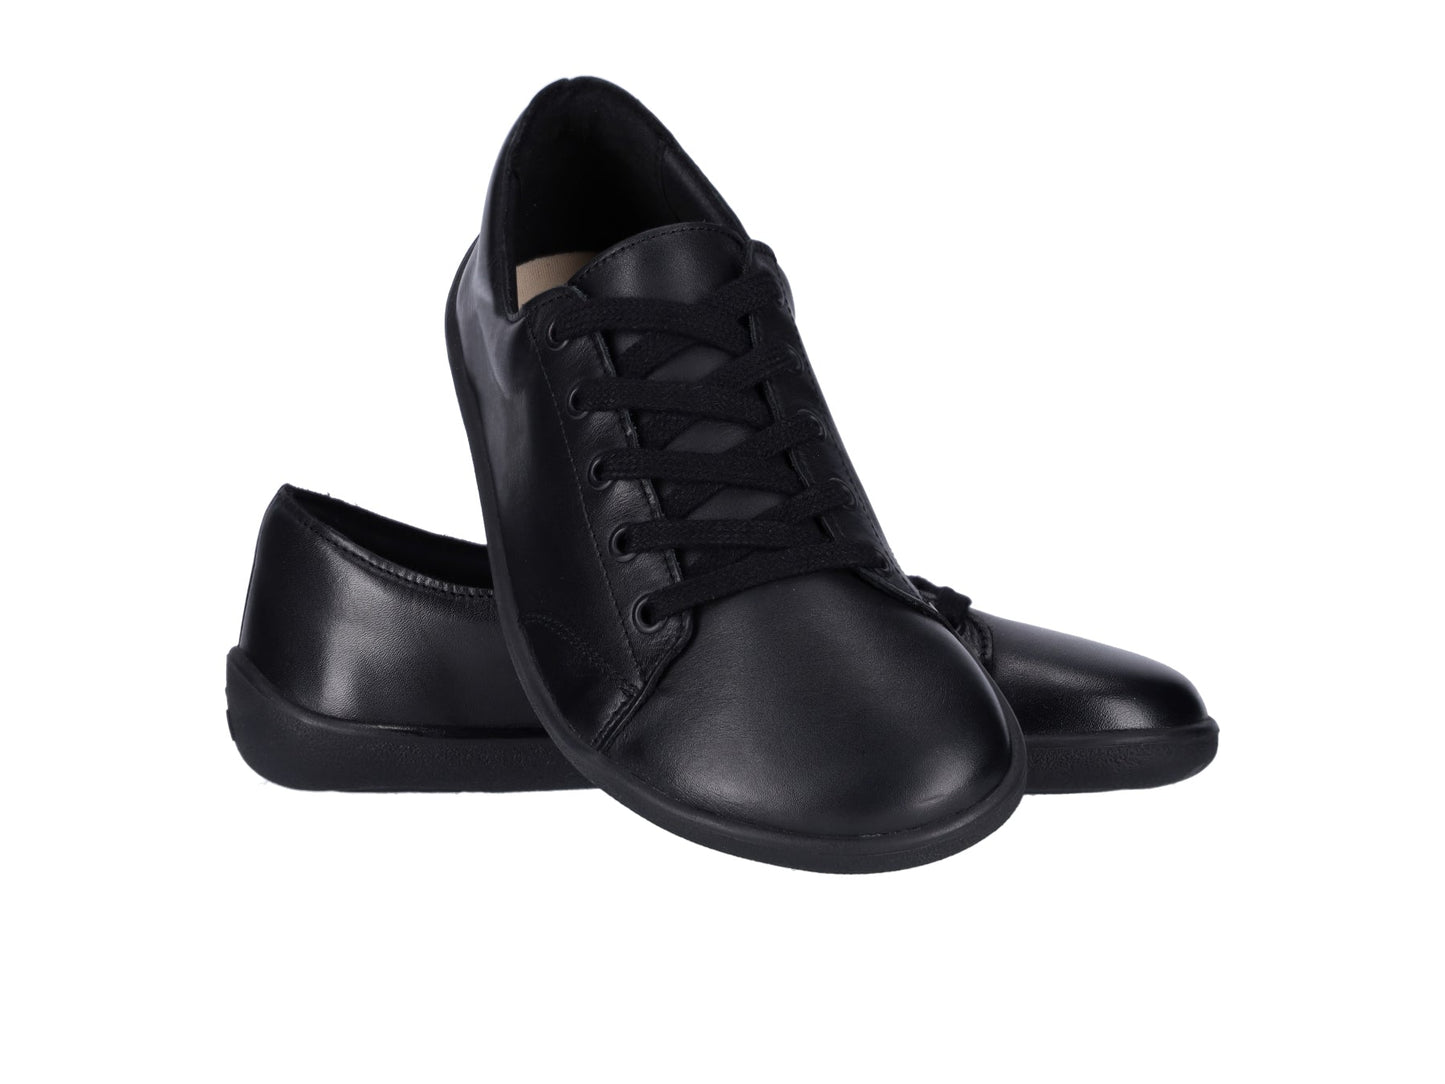 Barefoot Sneakers - Be Lenka Prime 2.0 - Black-Be Lenka-Cacles Barefoot